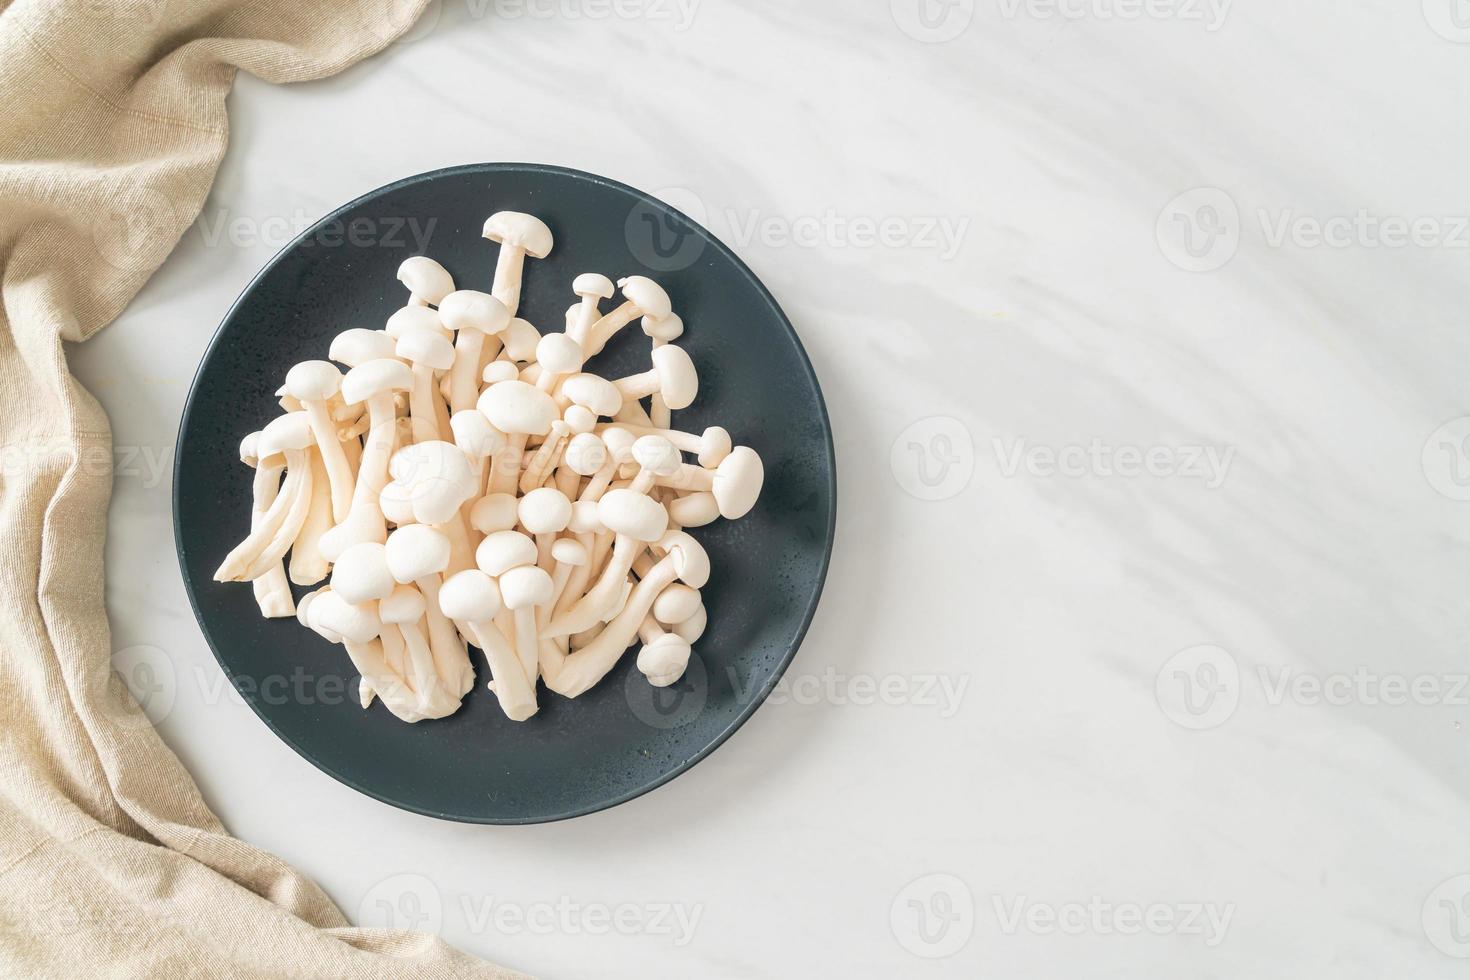 white beech mushroom or white reishi mushroom photo